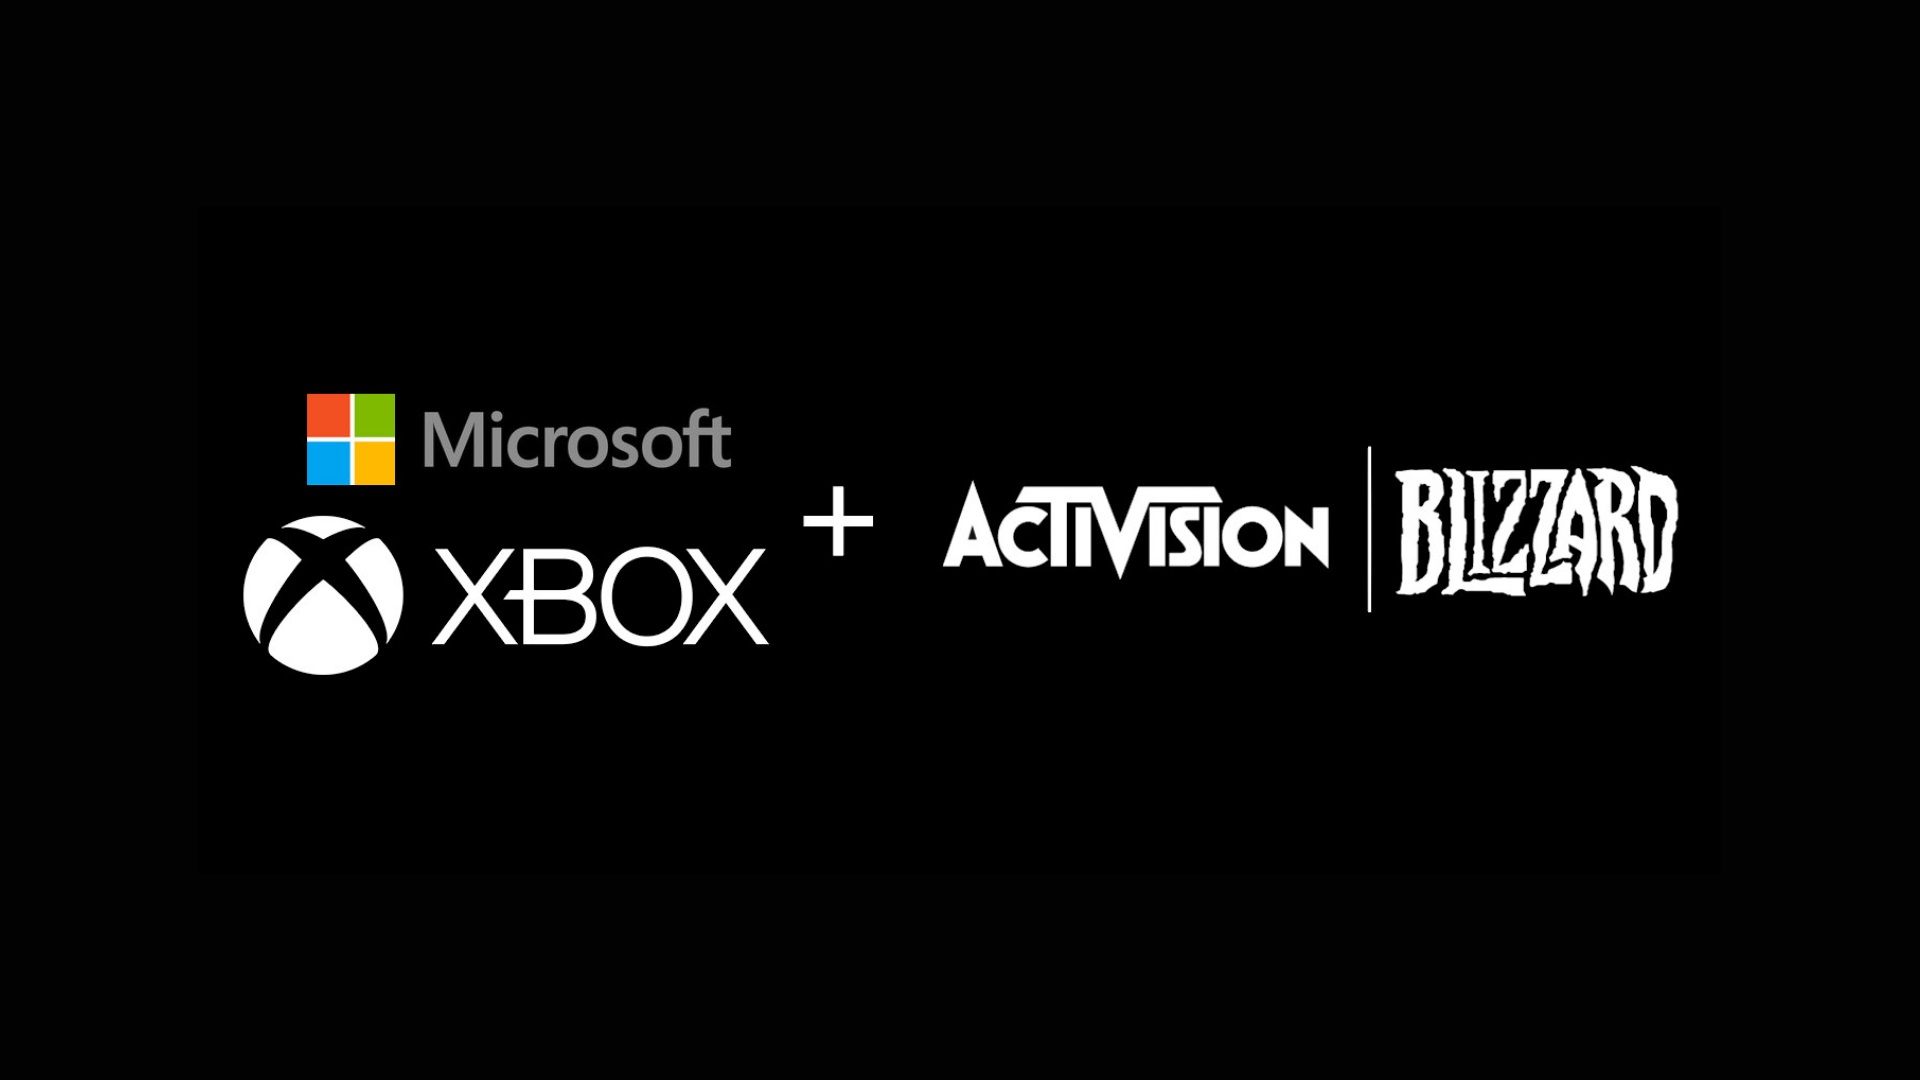 Microsoft + Activision Blizzard = fusione